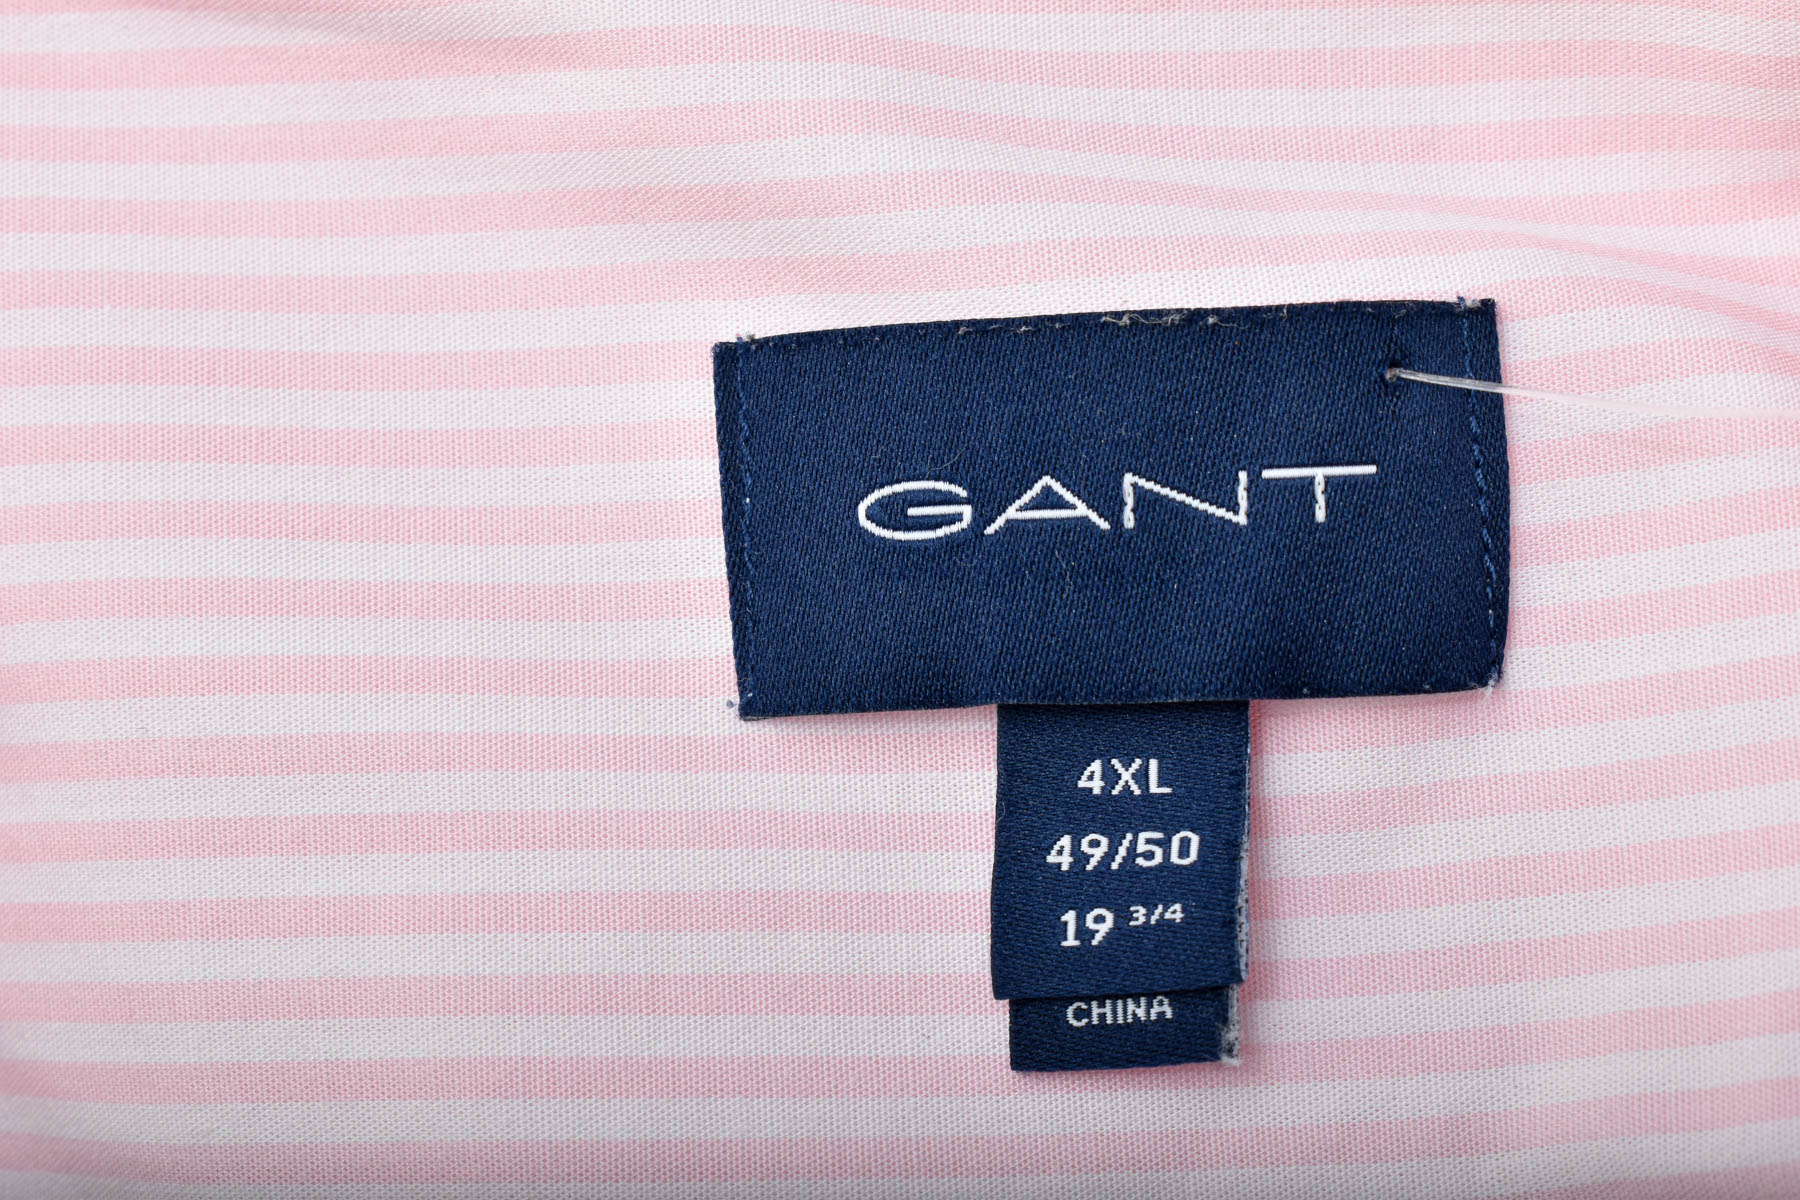 Ανδρικό πουκάμισο - Gant - 2